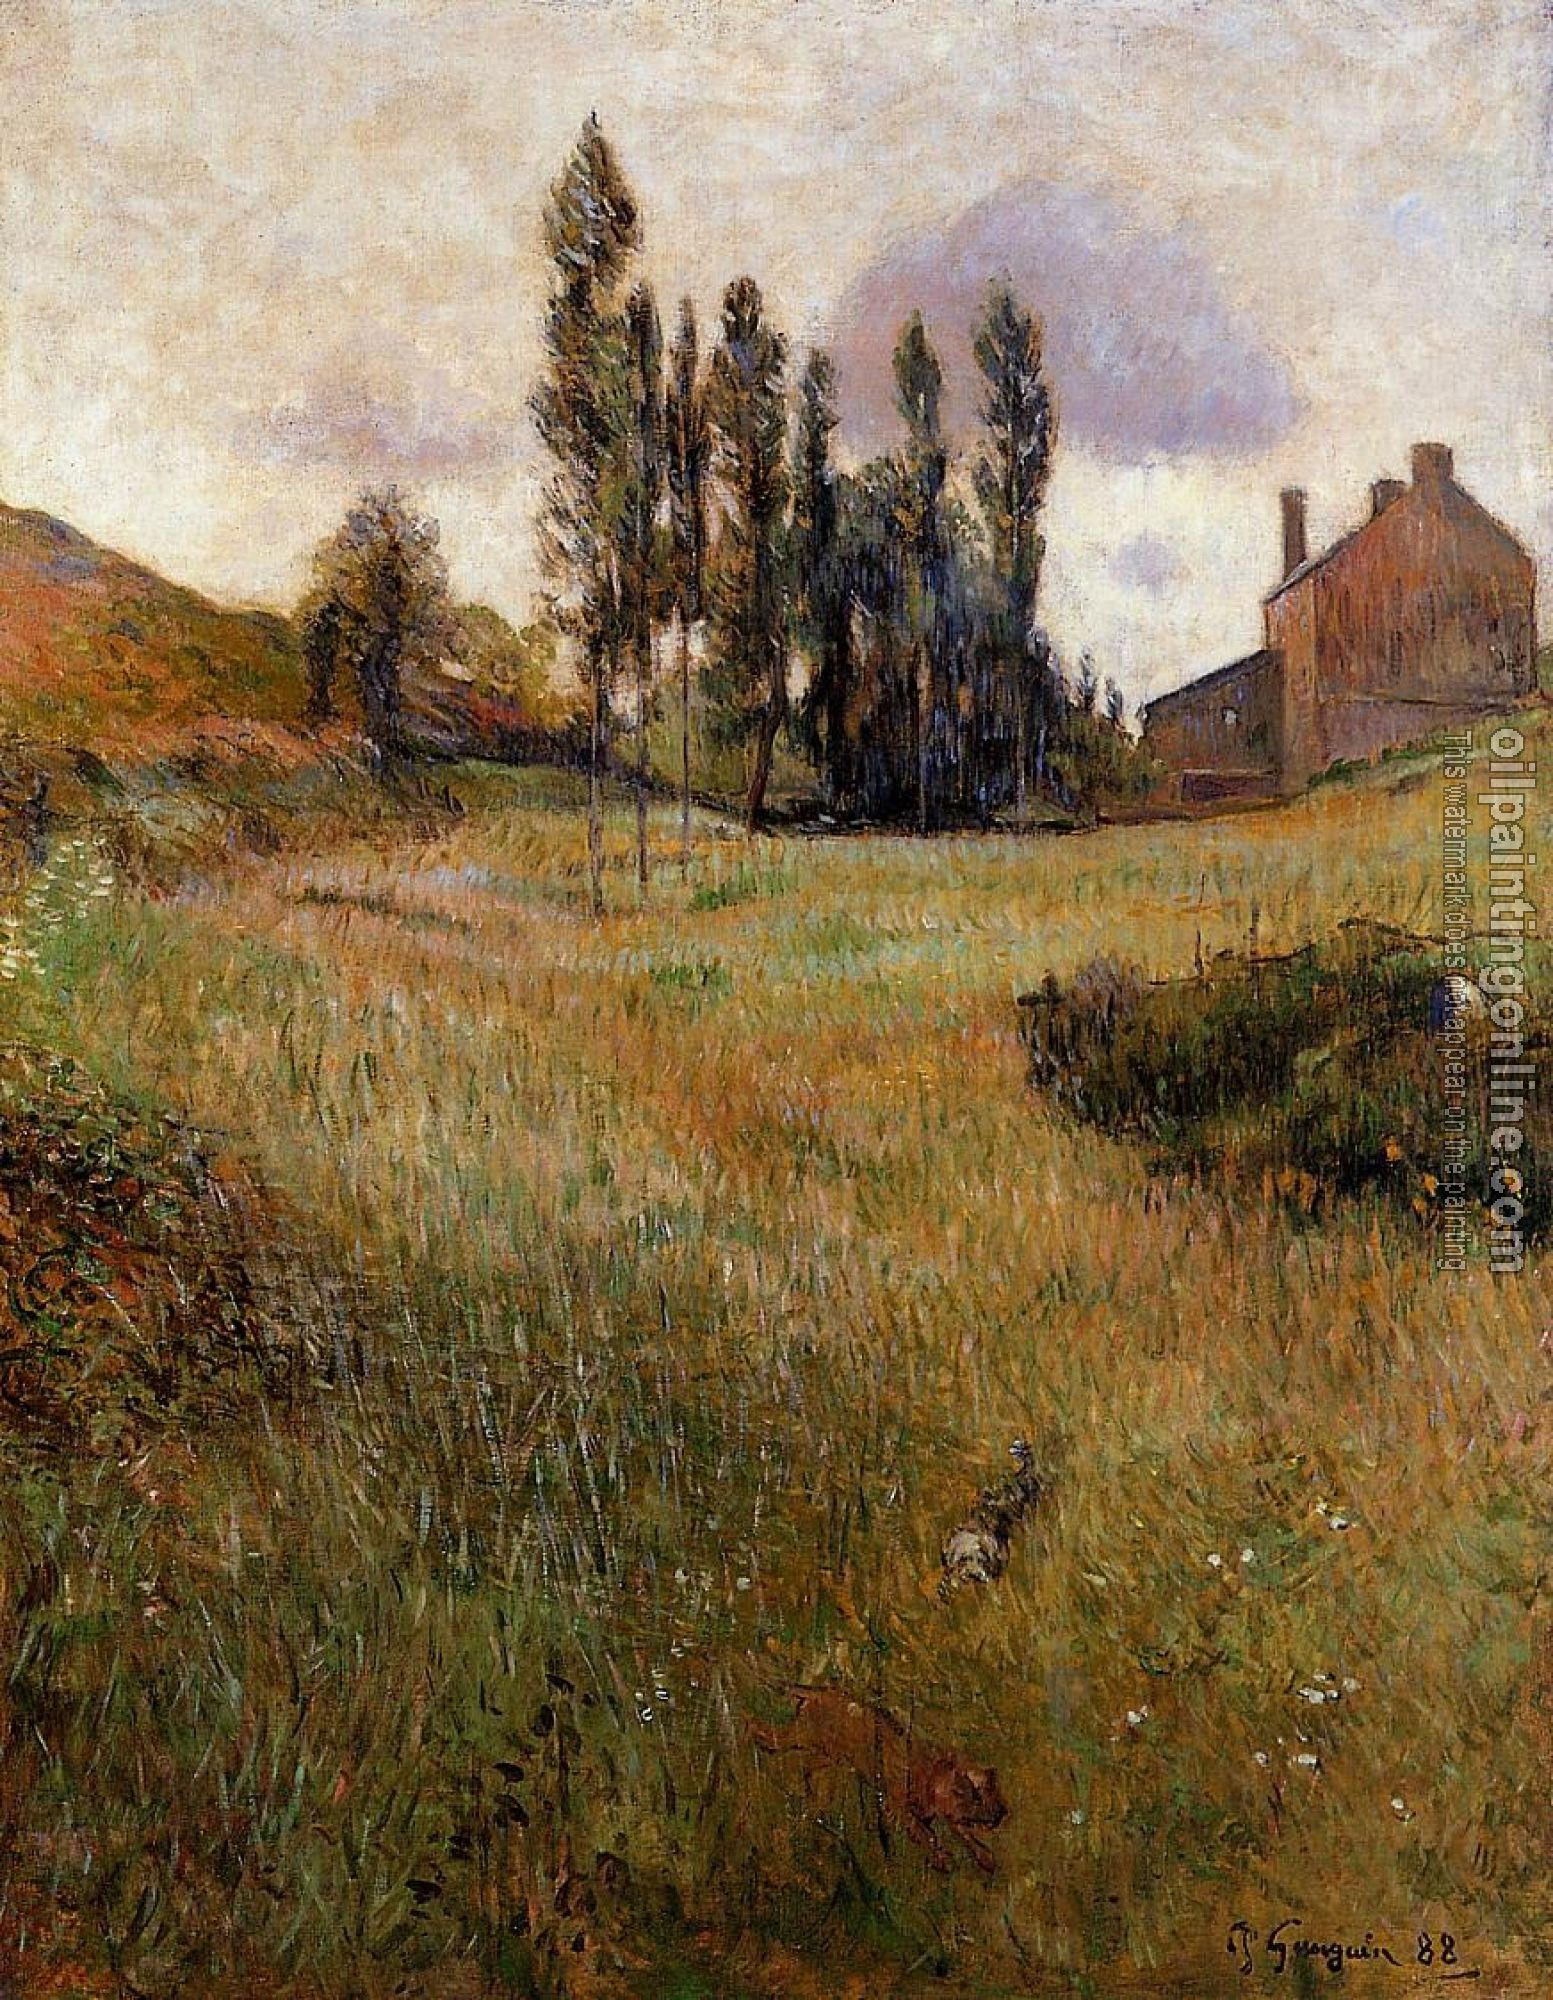 Gauguin, Paul - Dogs Running through a Field